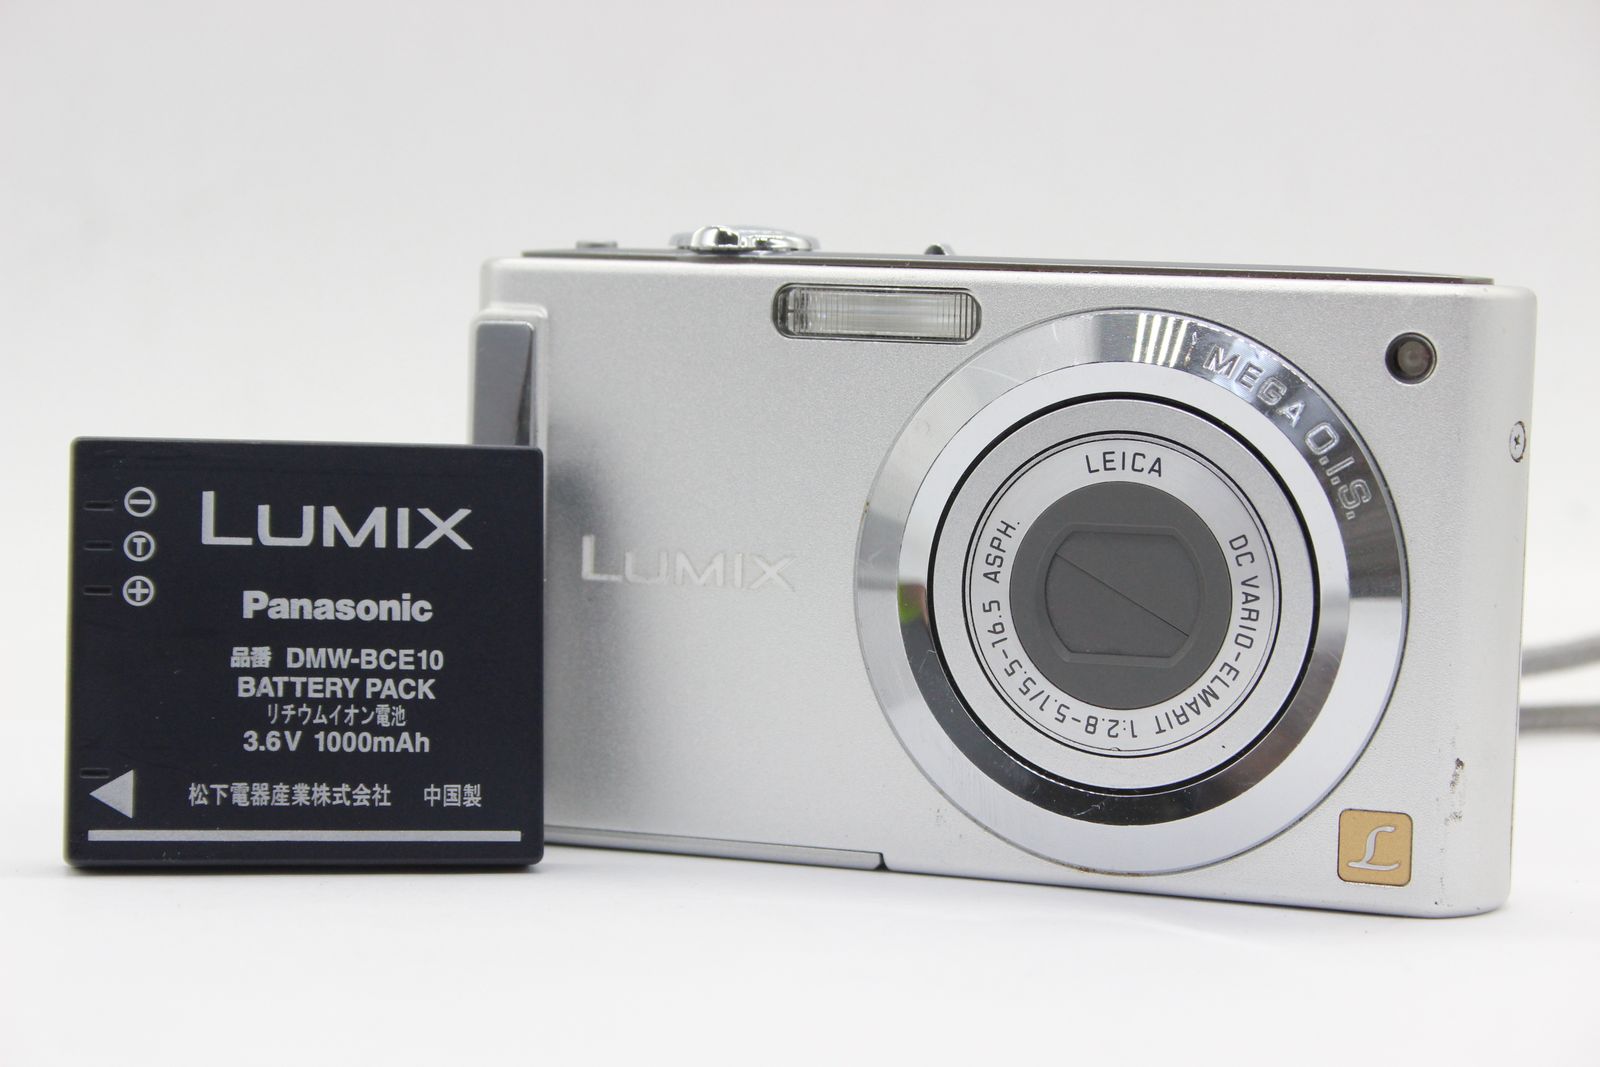 返品保証】 パナソニック Panasonic Lumix DMC-FS3 バッテリー付き 